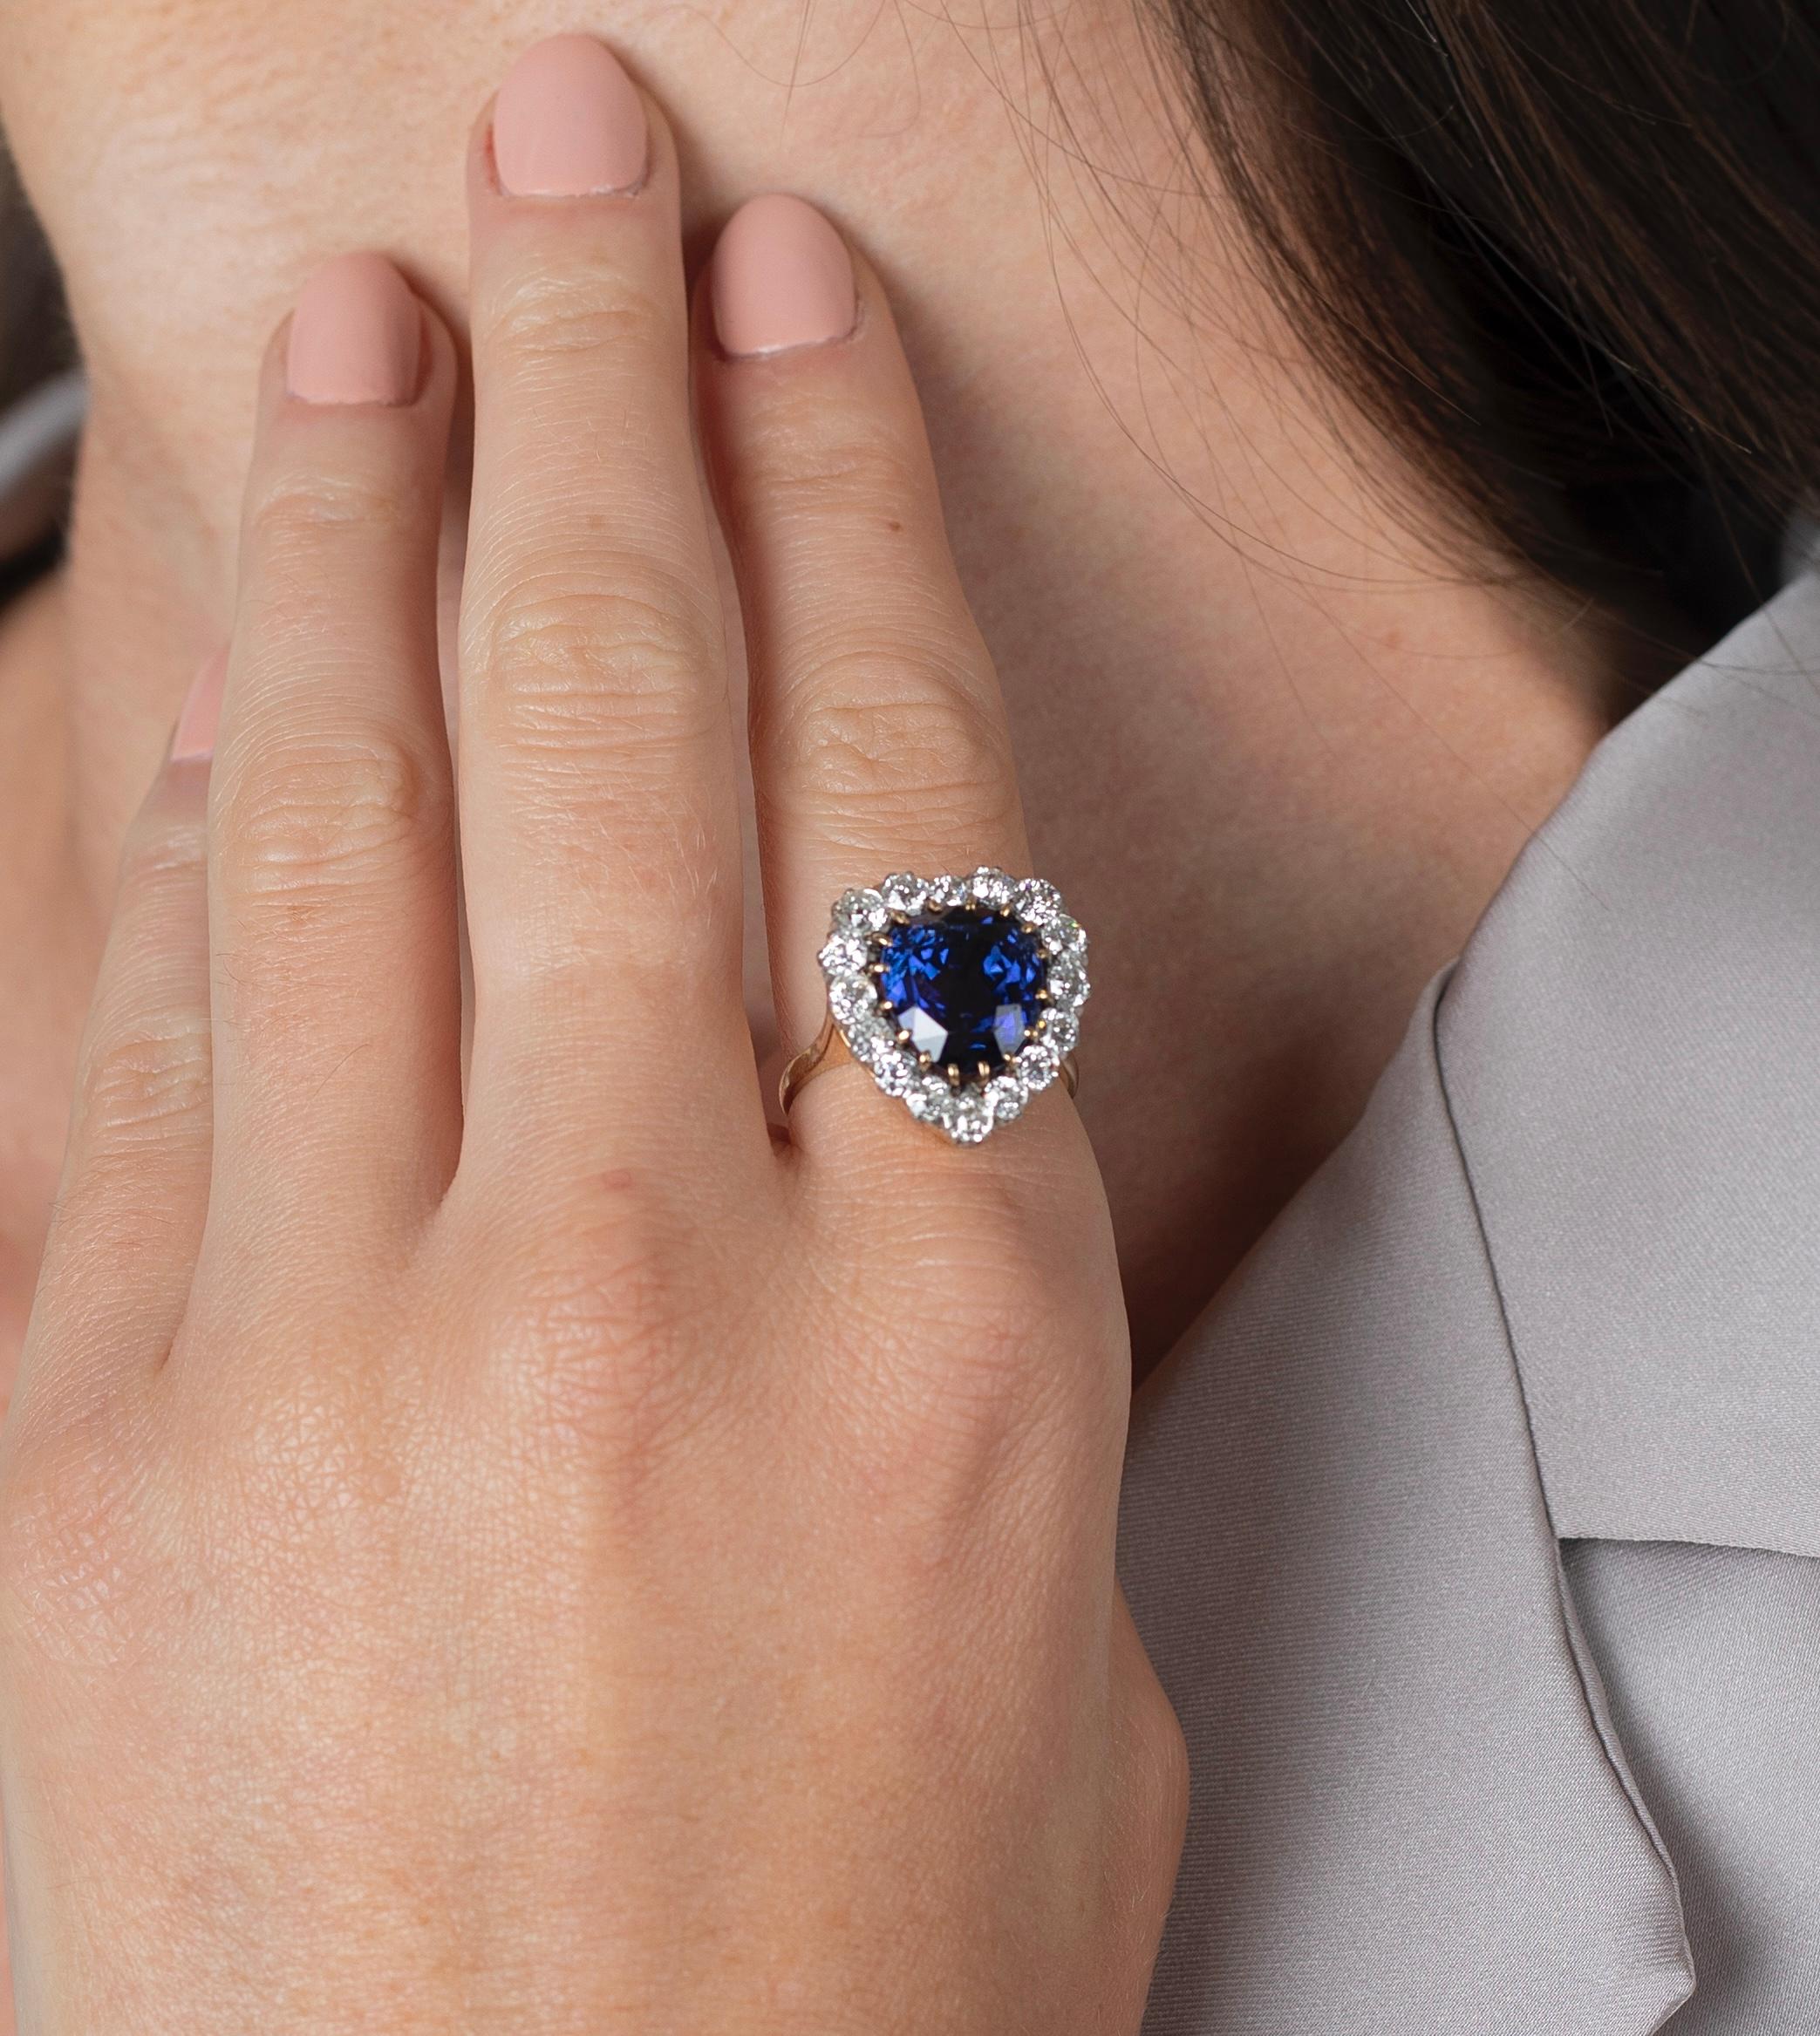 9 Karat blauer Saphir ceylonesischer Herkunft, verziert mit 16 runden Diamanten im alten europäischen Schliff. Die Steine sind in einer sicheren Multi-Printen-Fassung mit einer geschnitzten Korbfassung gefasst. Ein wahres Vintage-Meisterwerk.

Der